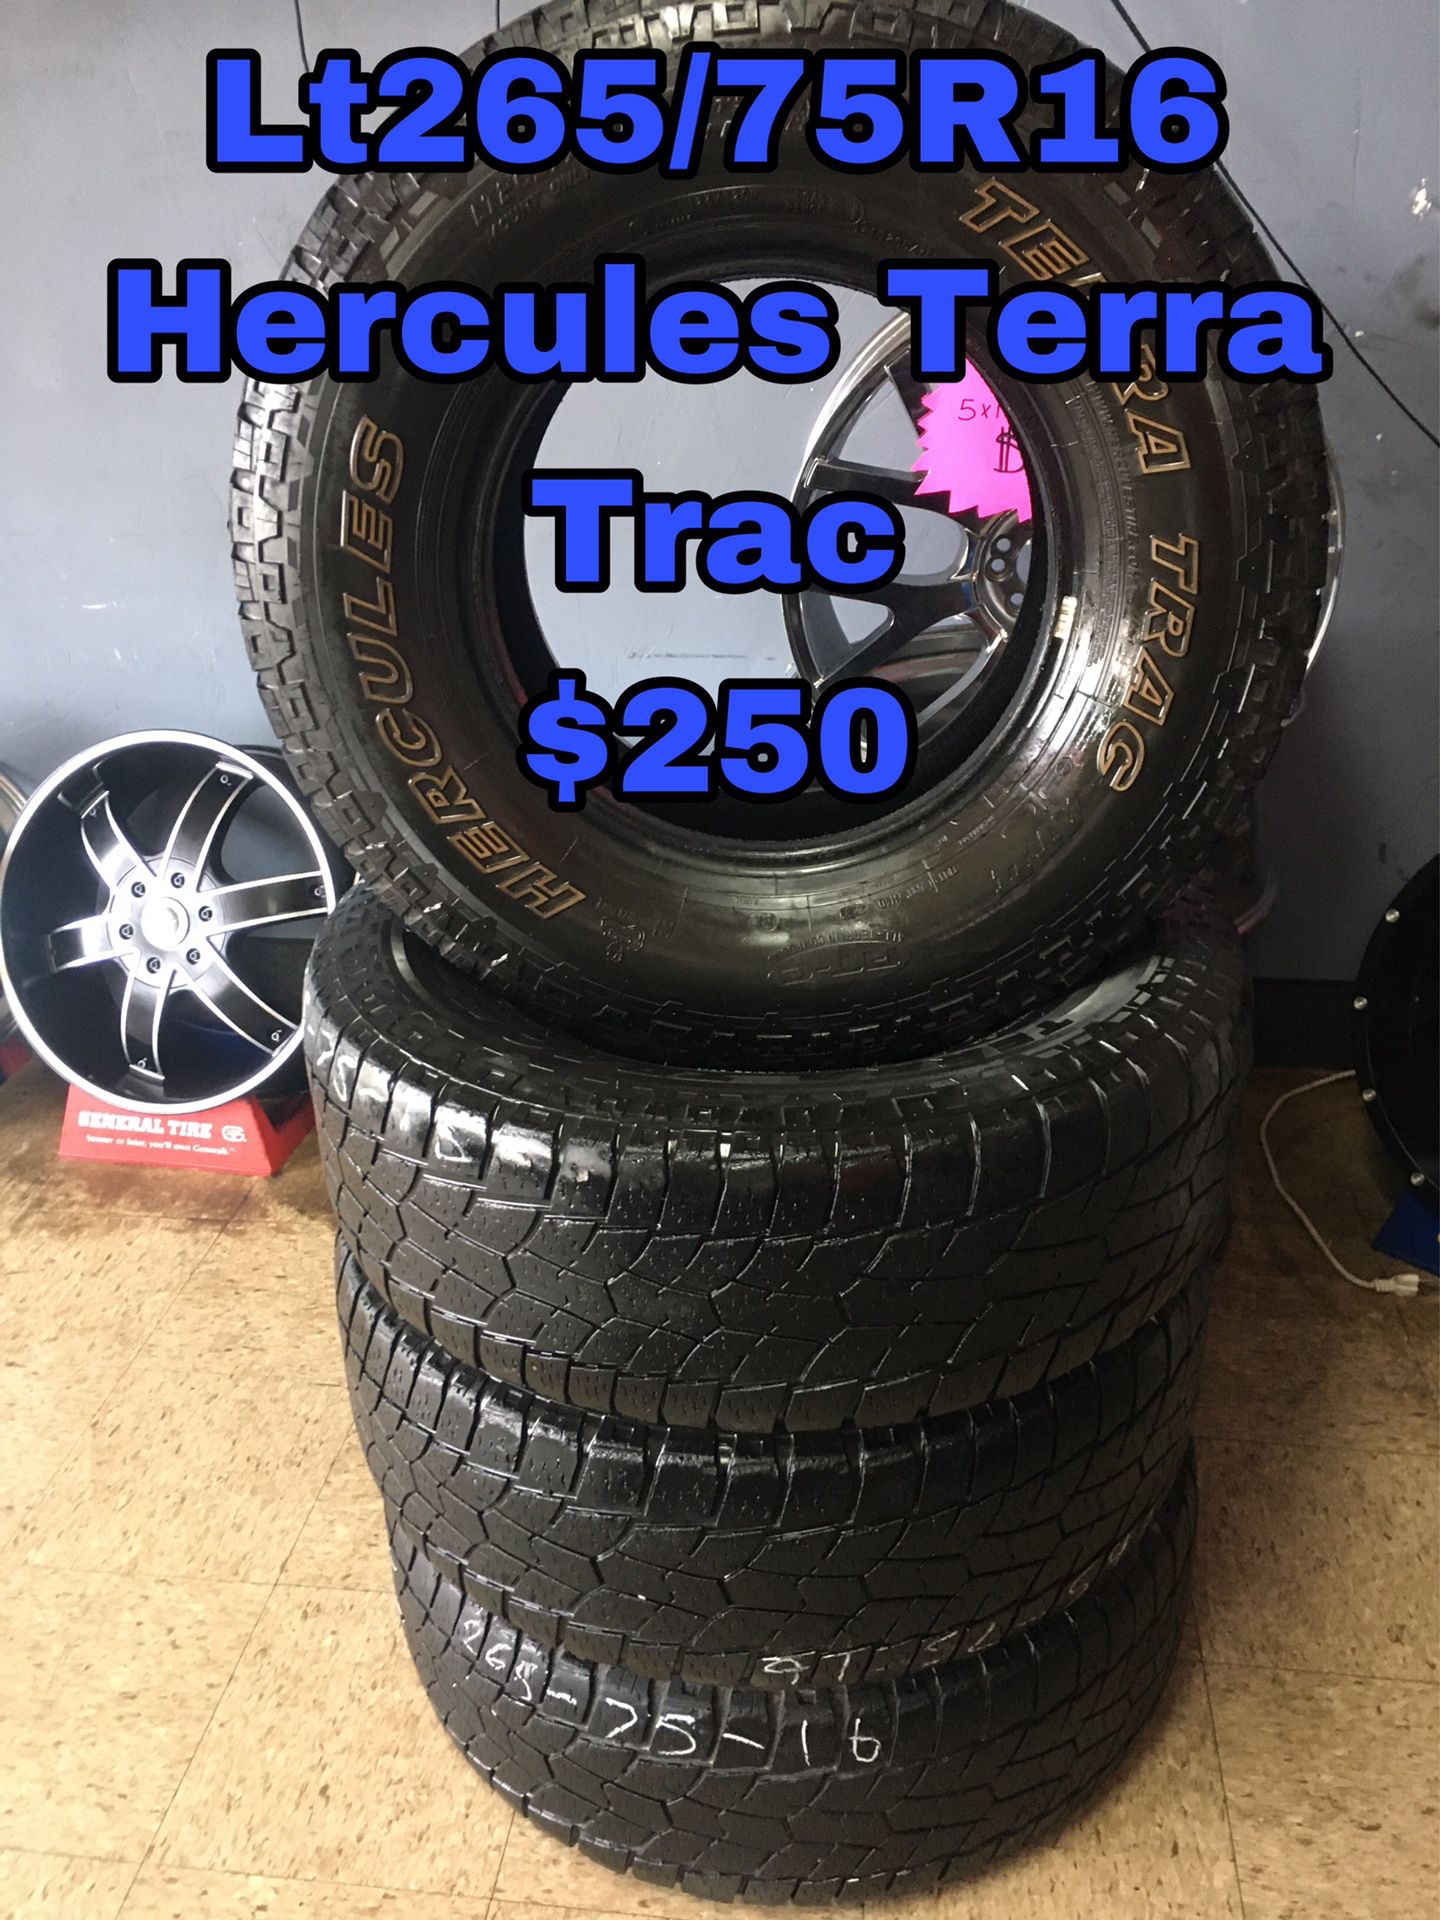 Lt265/75R16 Hercules Terra Trac 